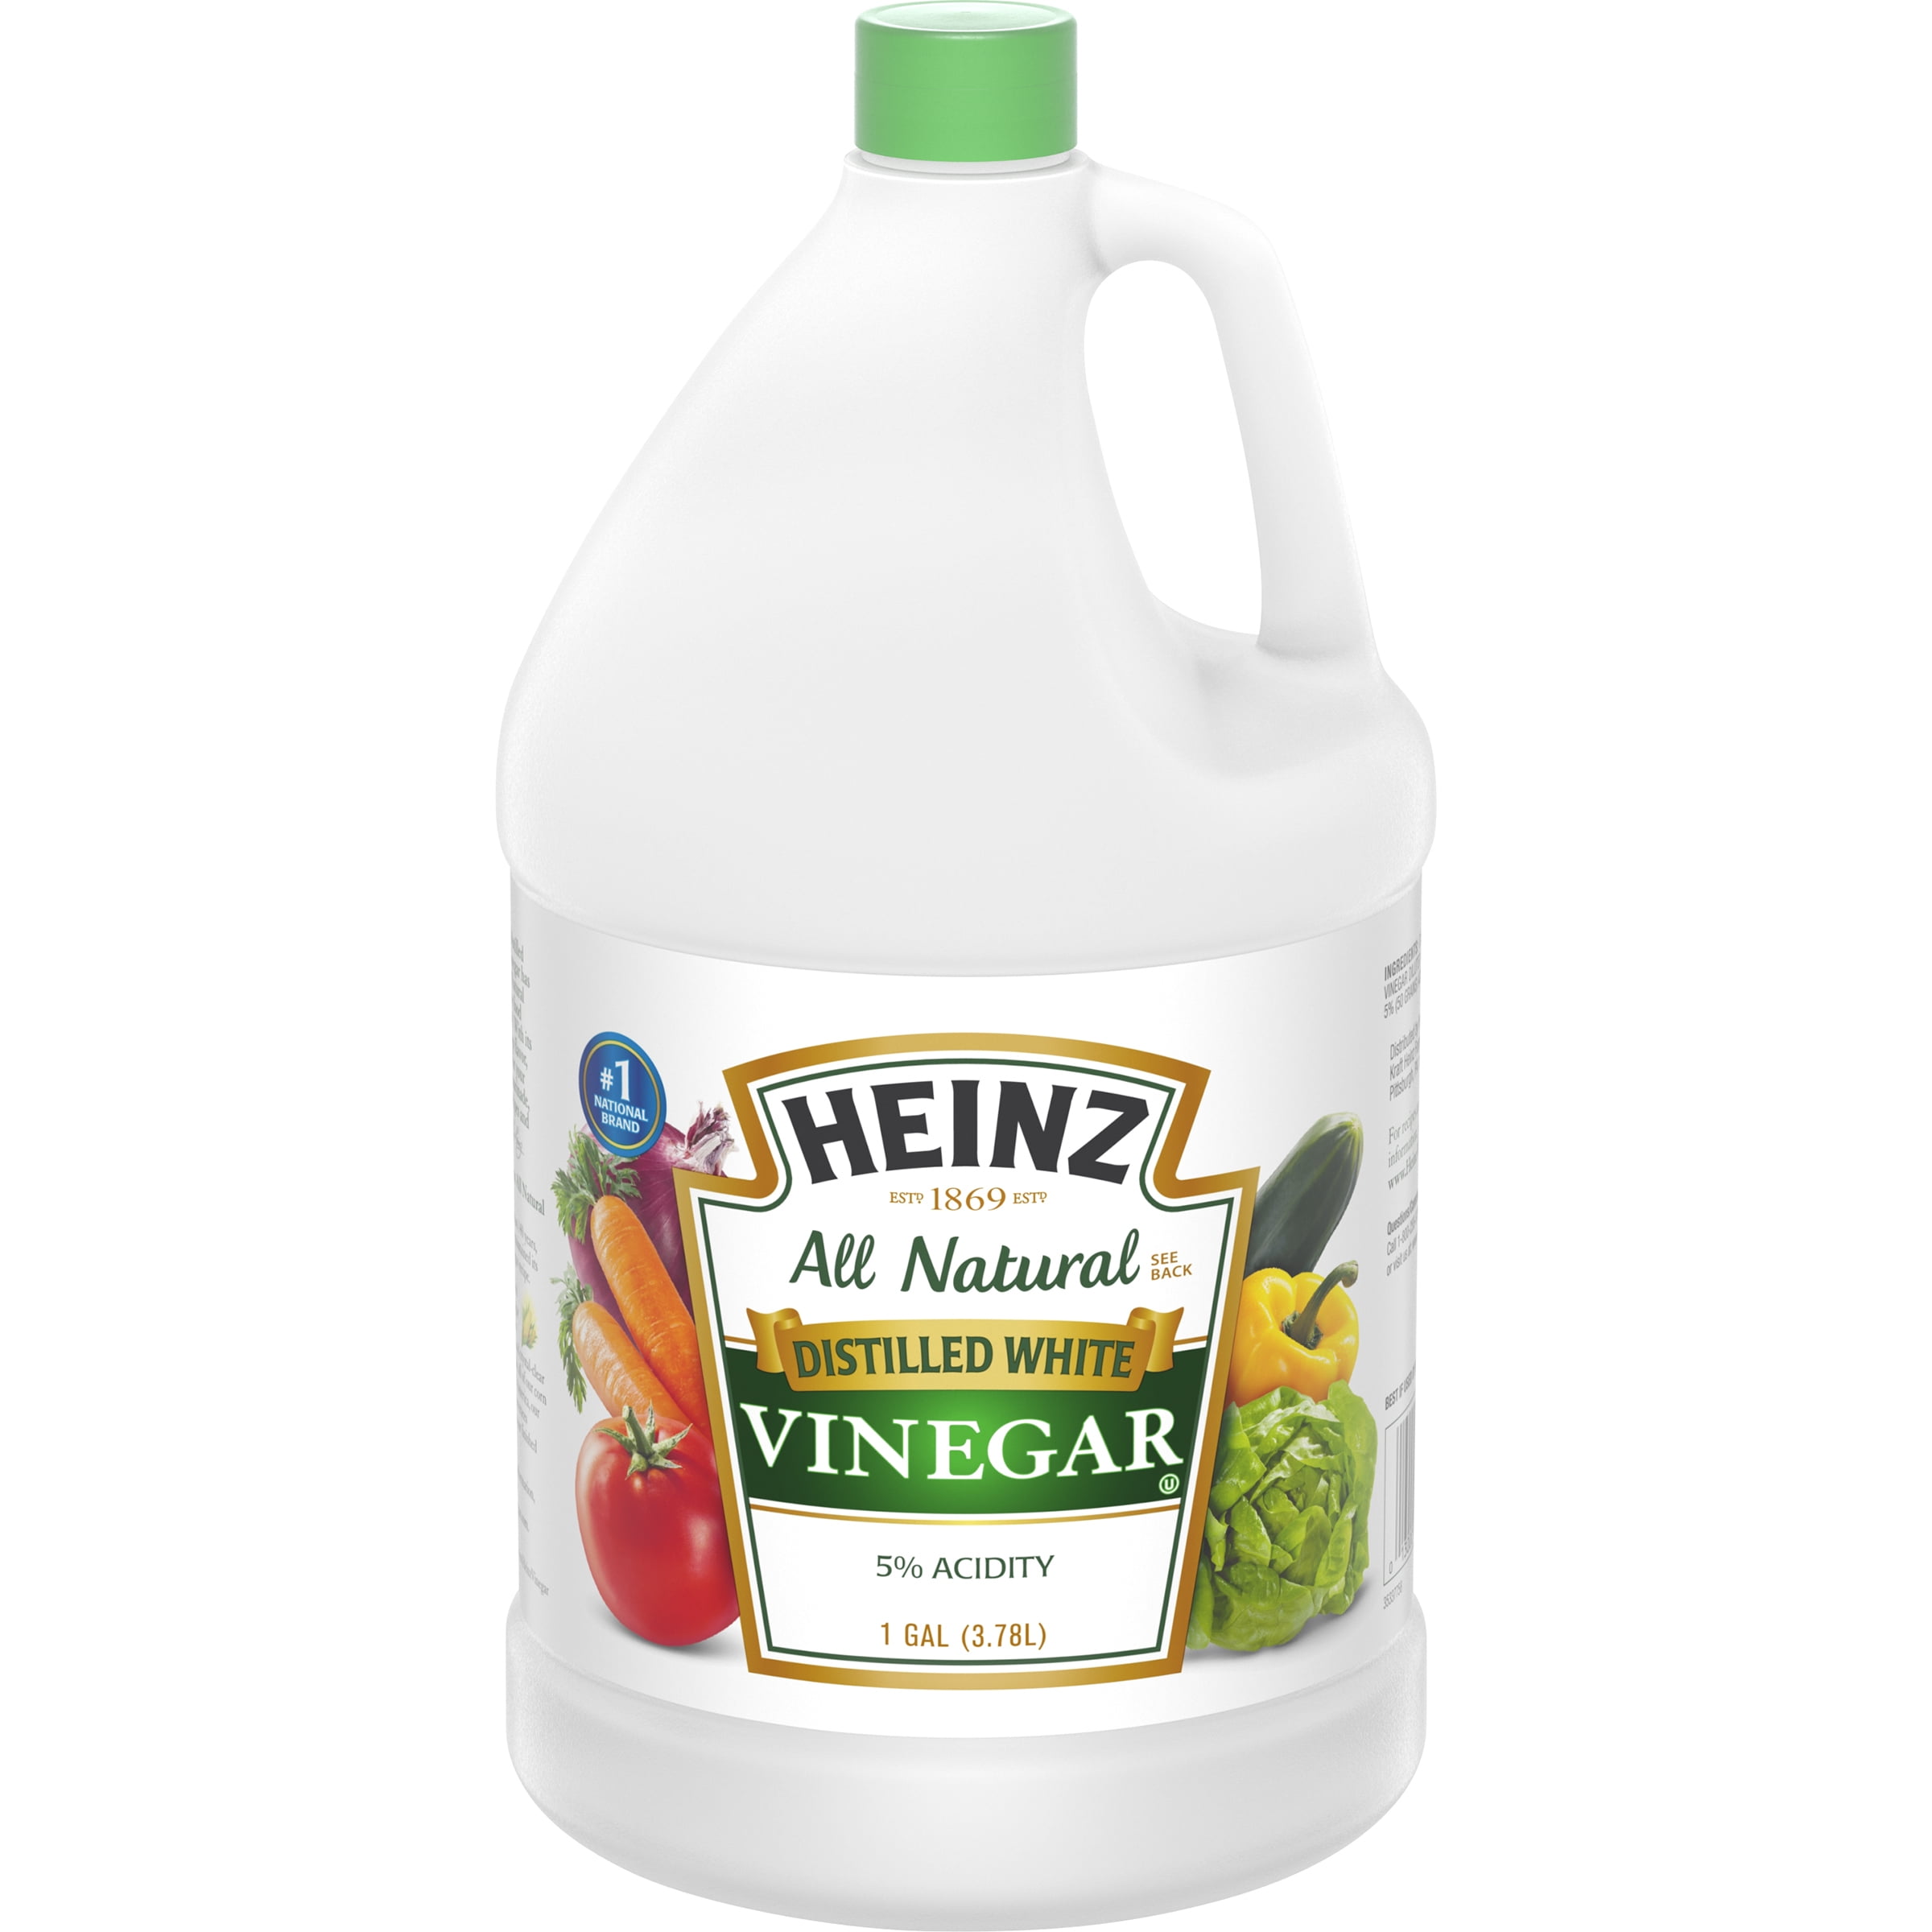 Heinz Distilled White Vinegar, 1 gal - Walmart.com - Walmart.com